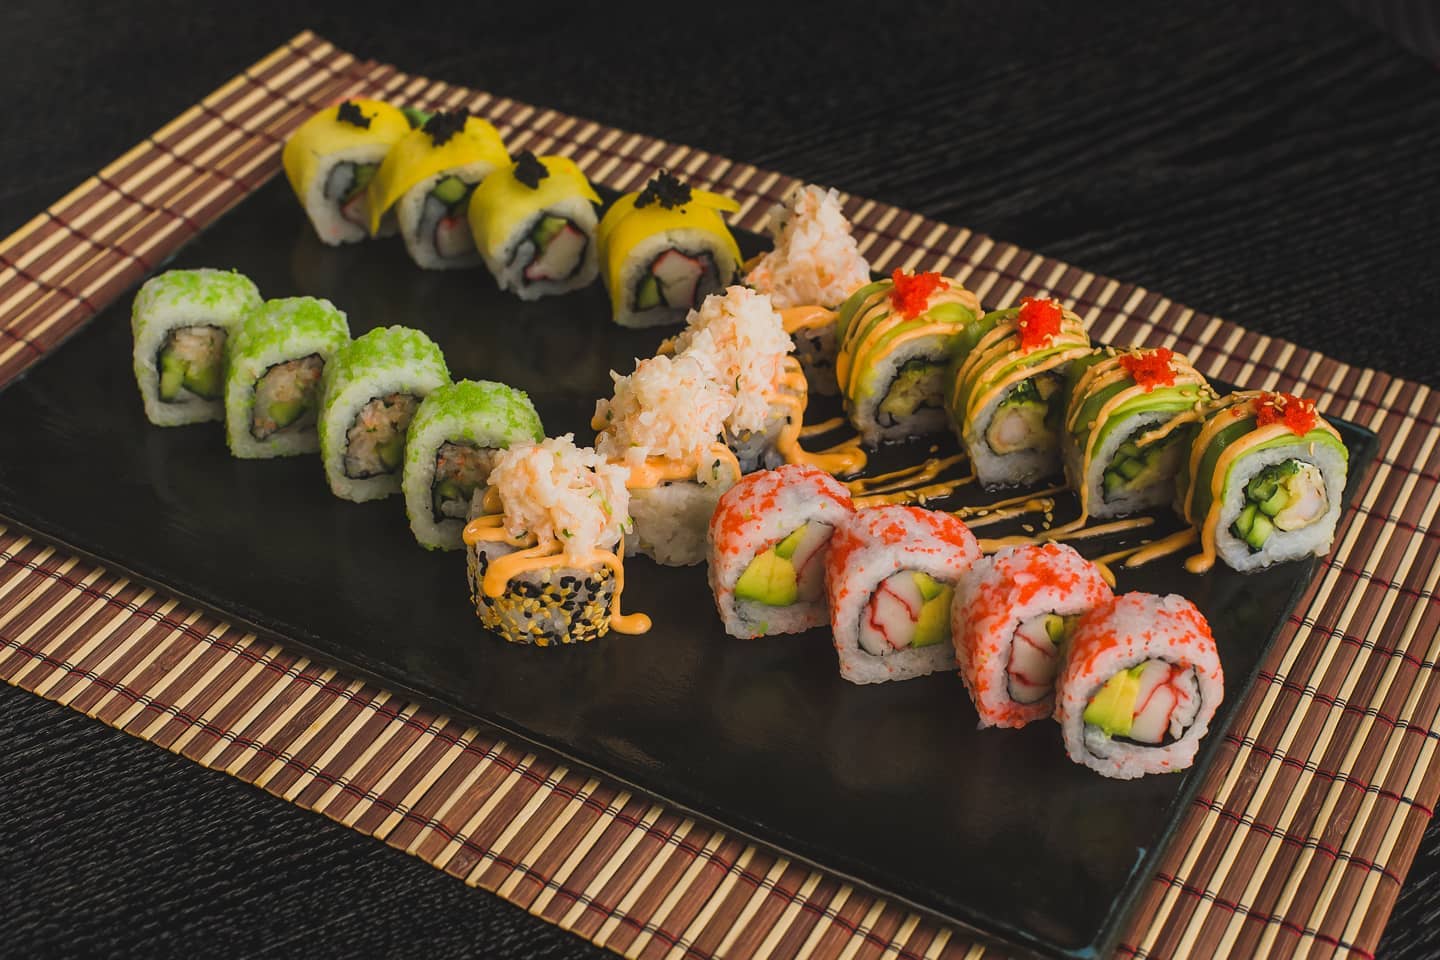 Σήμερα πάμε για all you can eat σε γνωστό sushi bar της πόλης